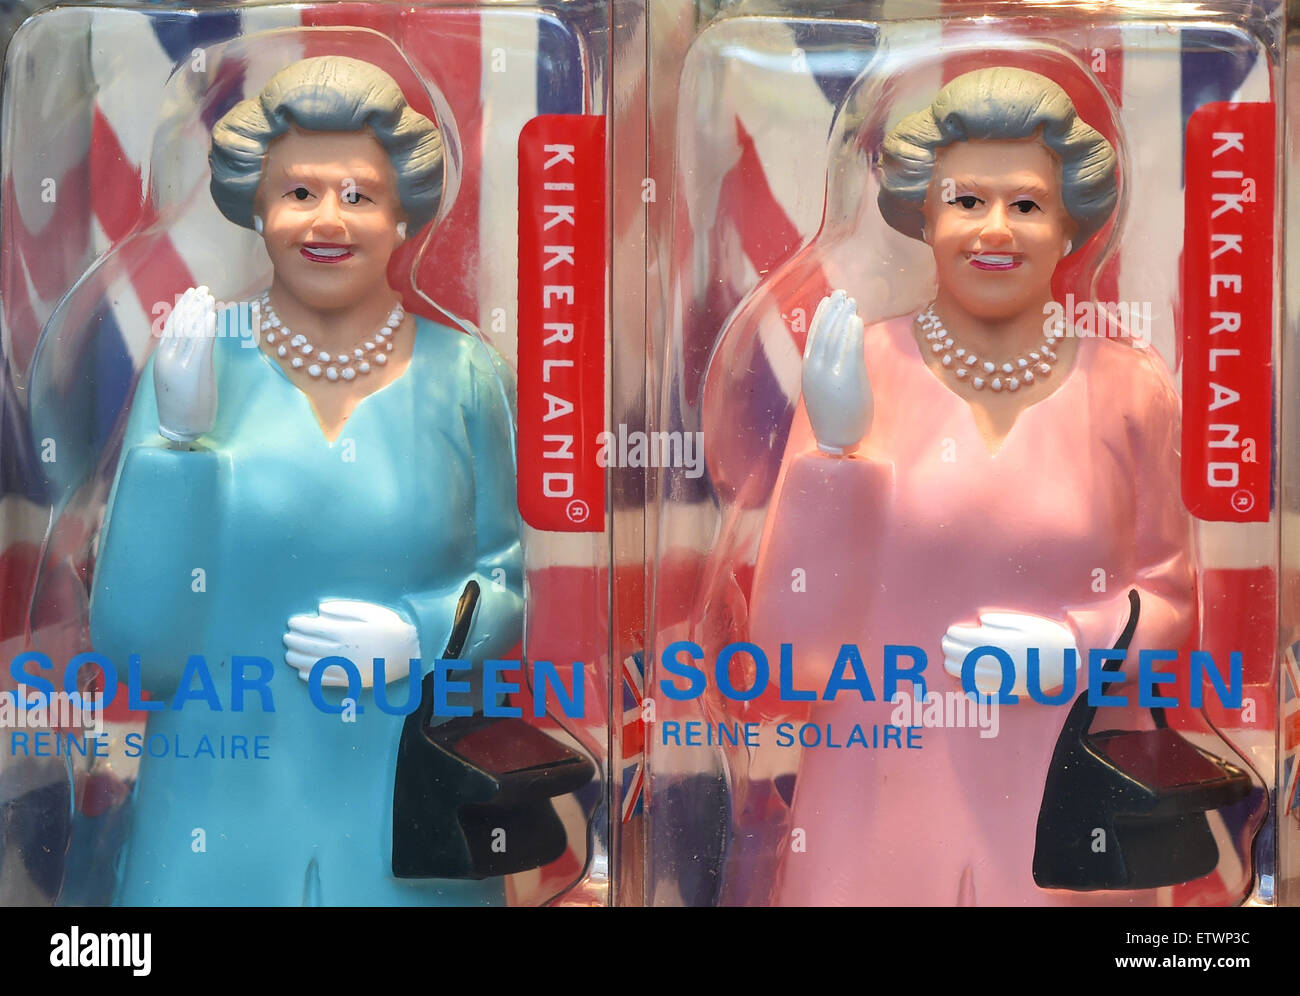 Berlin, Deutschland. 9. Juni 2015. Winken solar Figuren von der Königin in eine blaue und rosa Kleid zum Verkauf für 25 Euro pro Figur in einem Schaufenster in Berlin, Deutschland, 9. Juni 2015. Foto: Jens Kalaene/Dpa/Alamy Live News Stockfoto